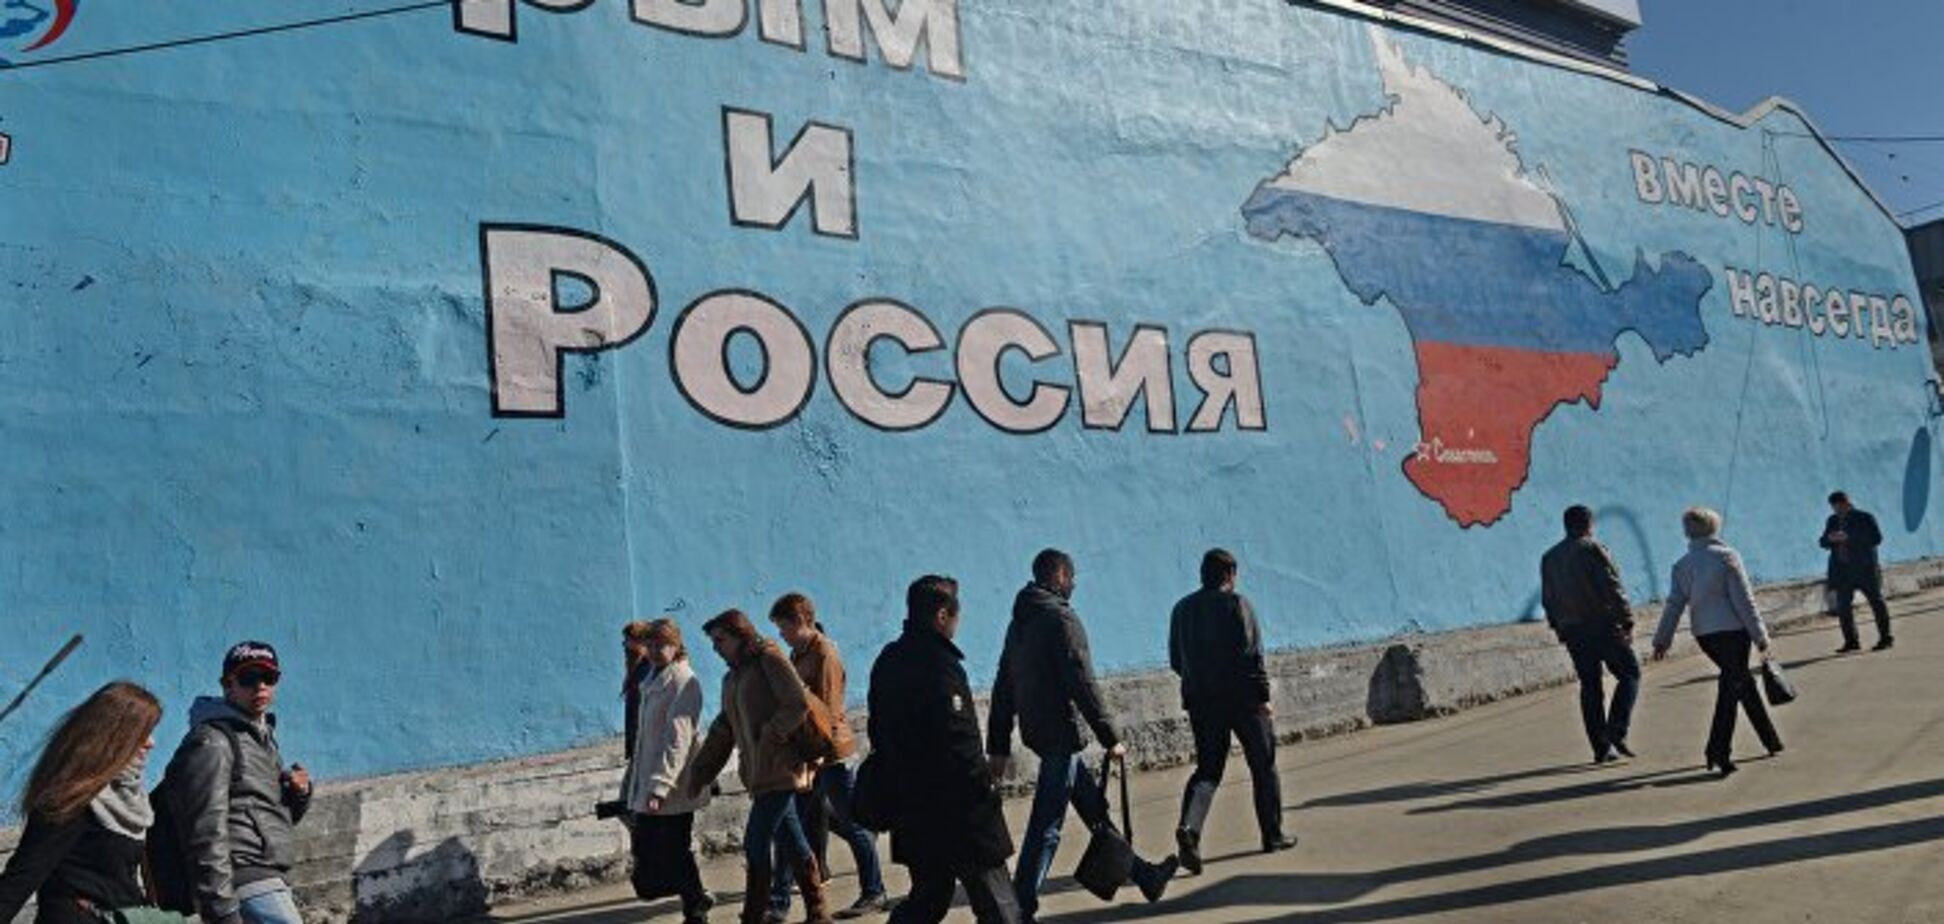 'Ціни — просто жесть!' Кримчани поскаржилися на життя при Росії